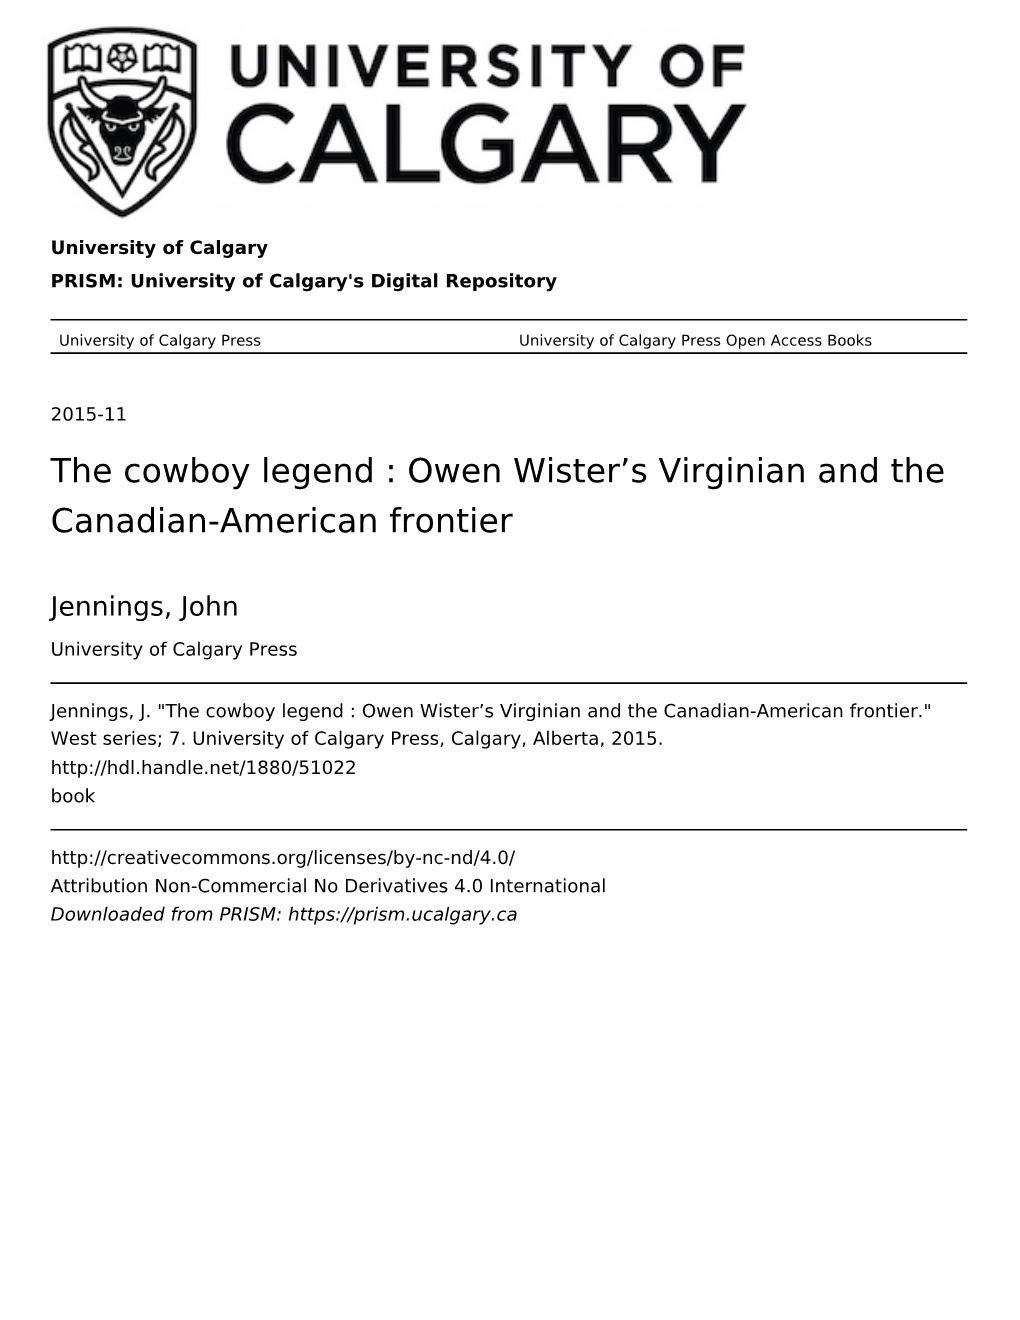 The Cowboy Legend : Owen Wister's